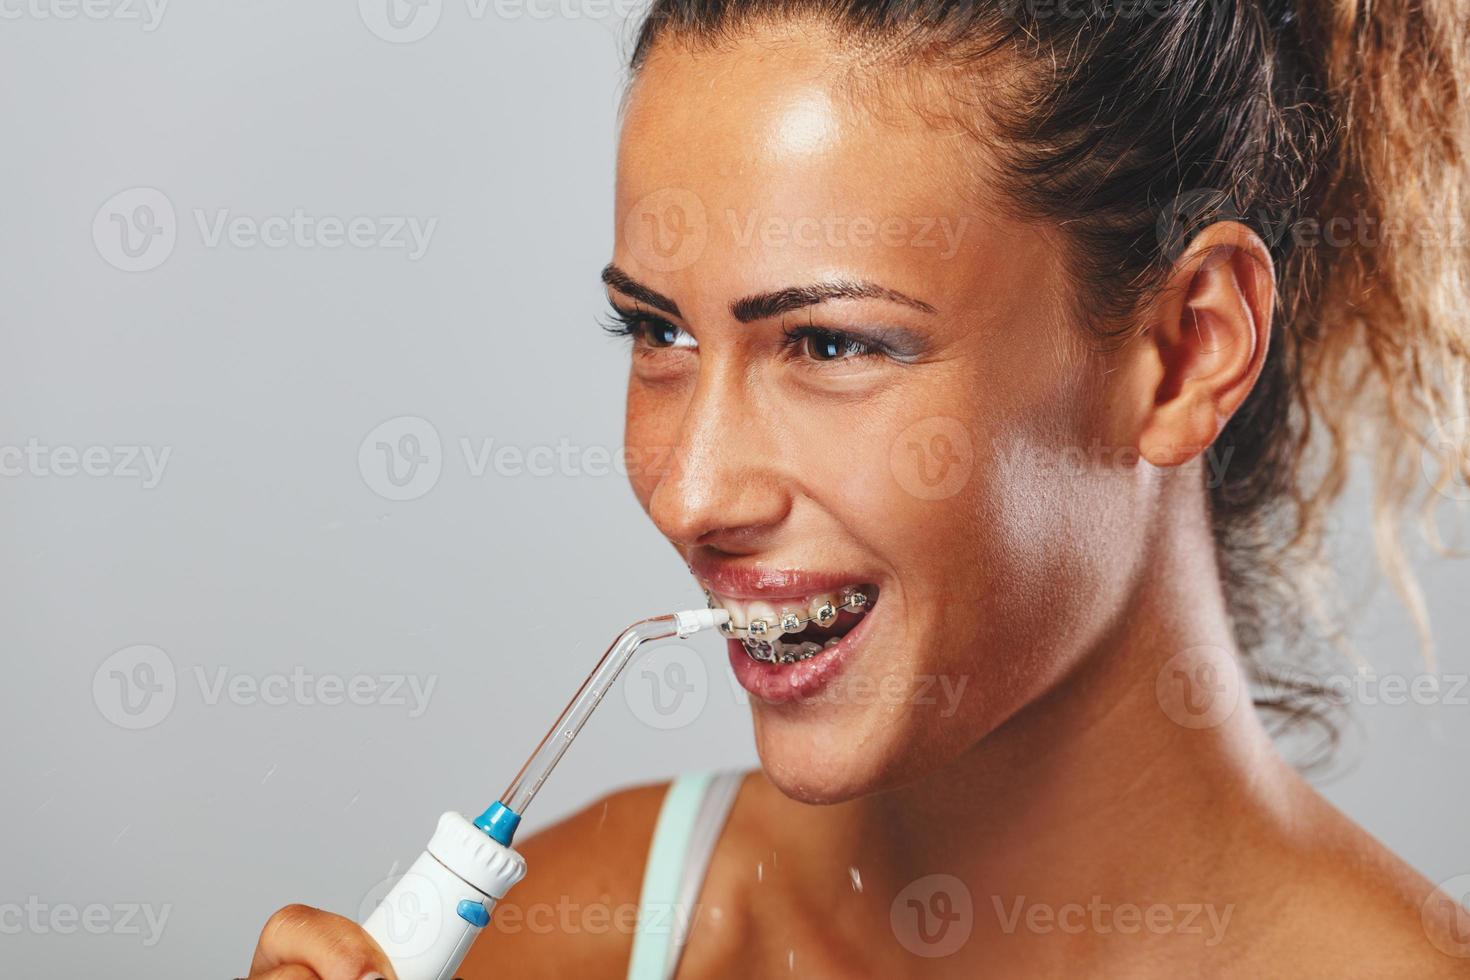 escovar os dentes com fio dental foto